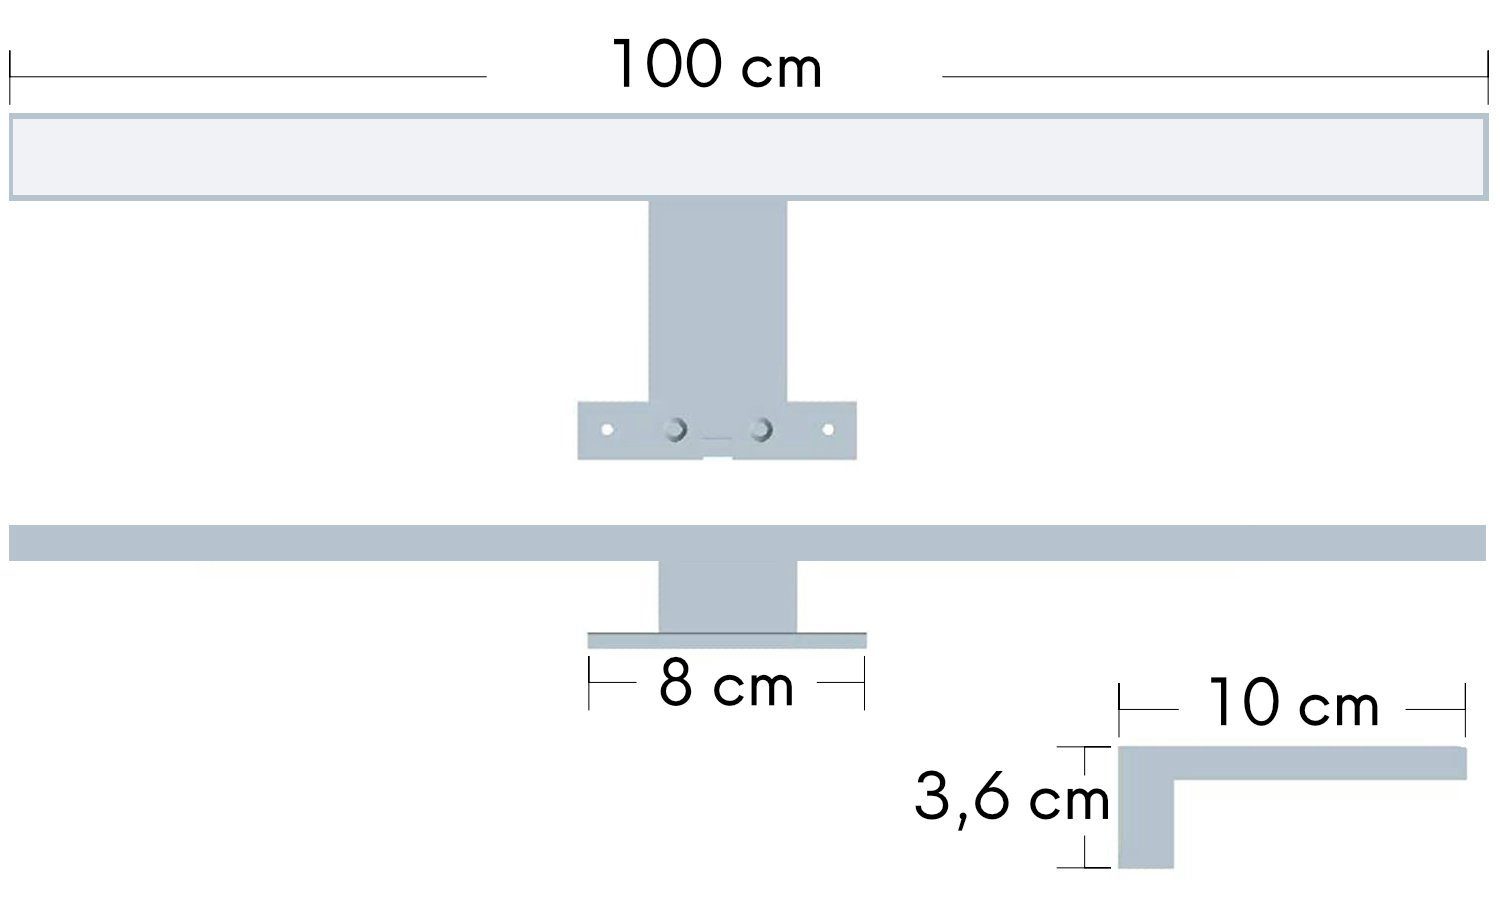 kalb Spiegelleuchte 100cm LED Badleuchte neutralweiß silbergrau, 230V, Spiegellampe Badlampe